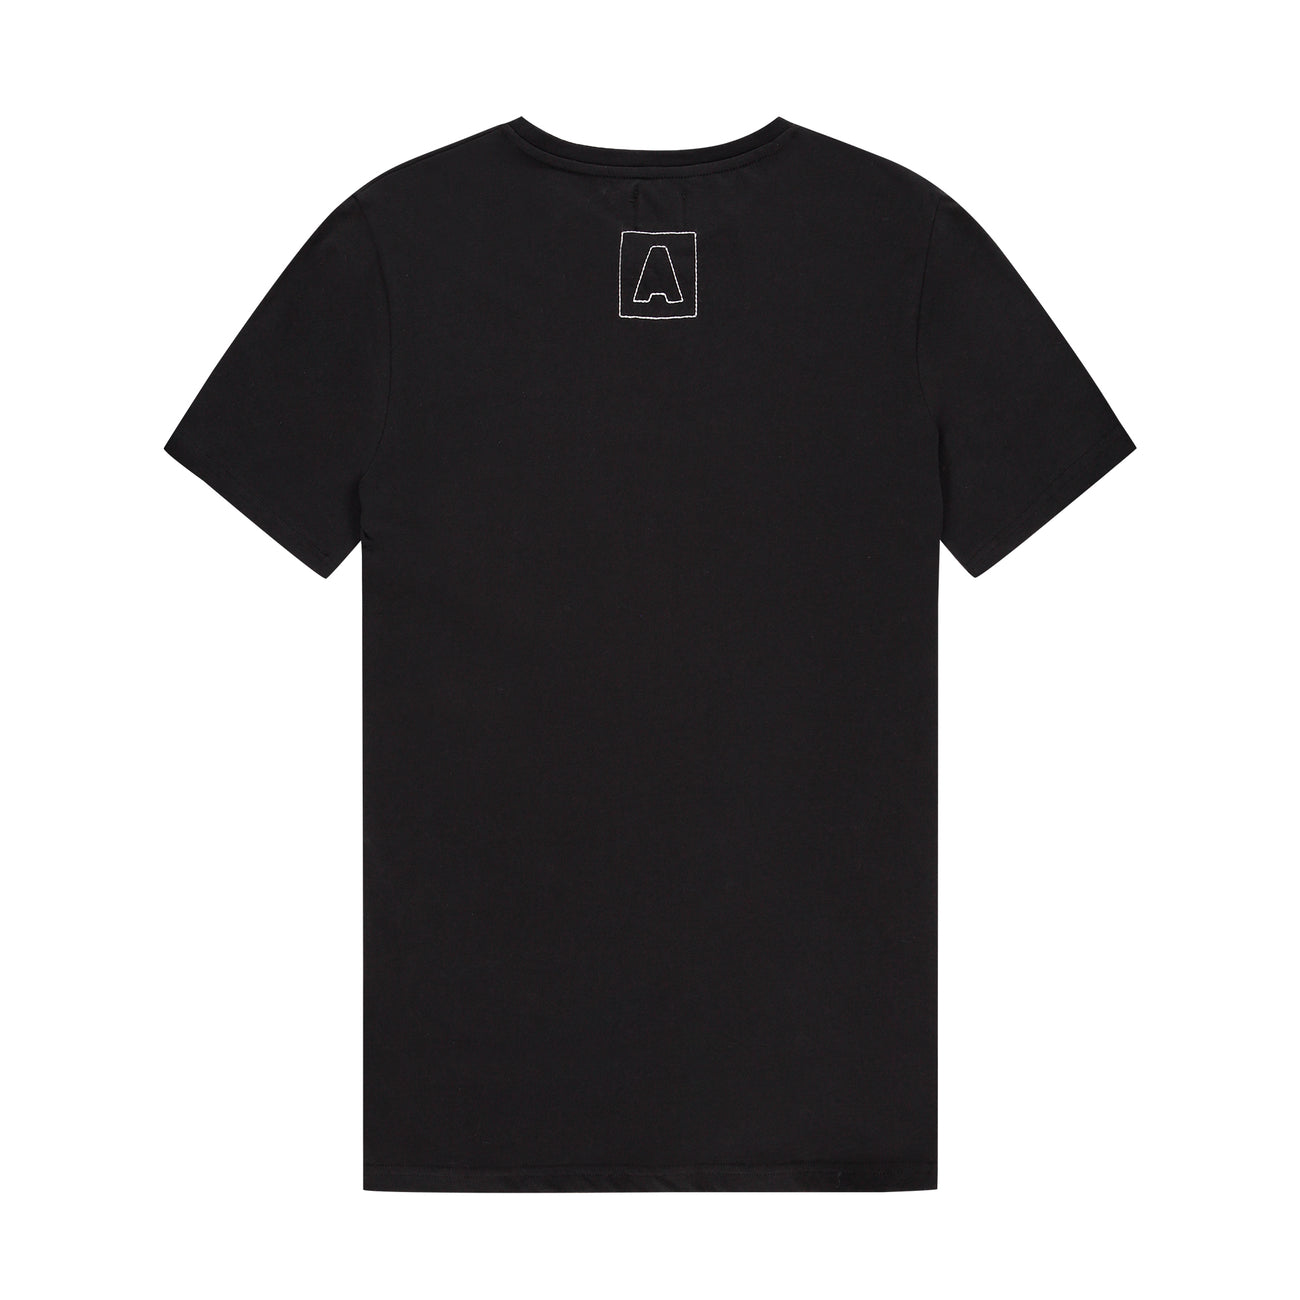 Armin van Buuren - Embroidery T-shirt